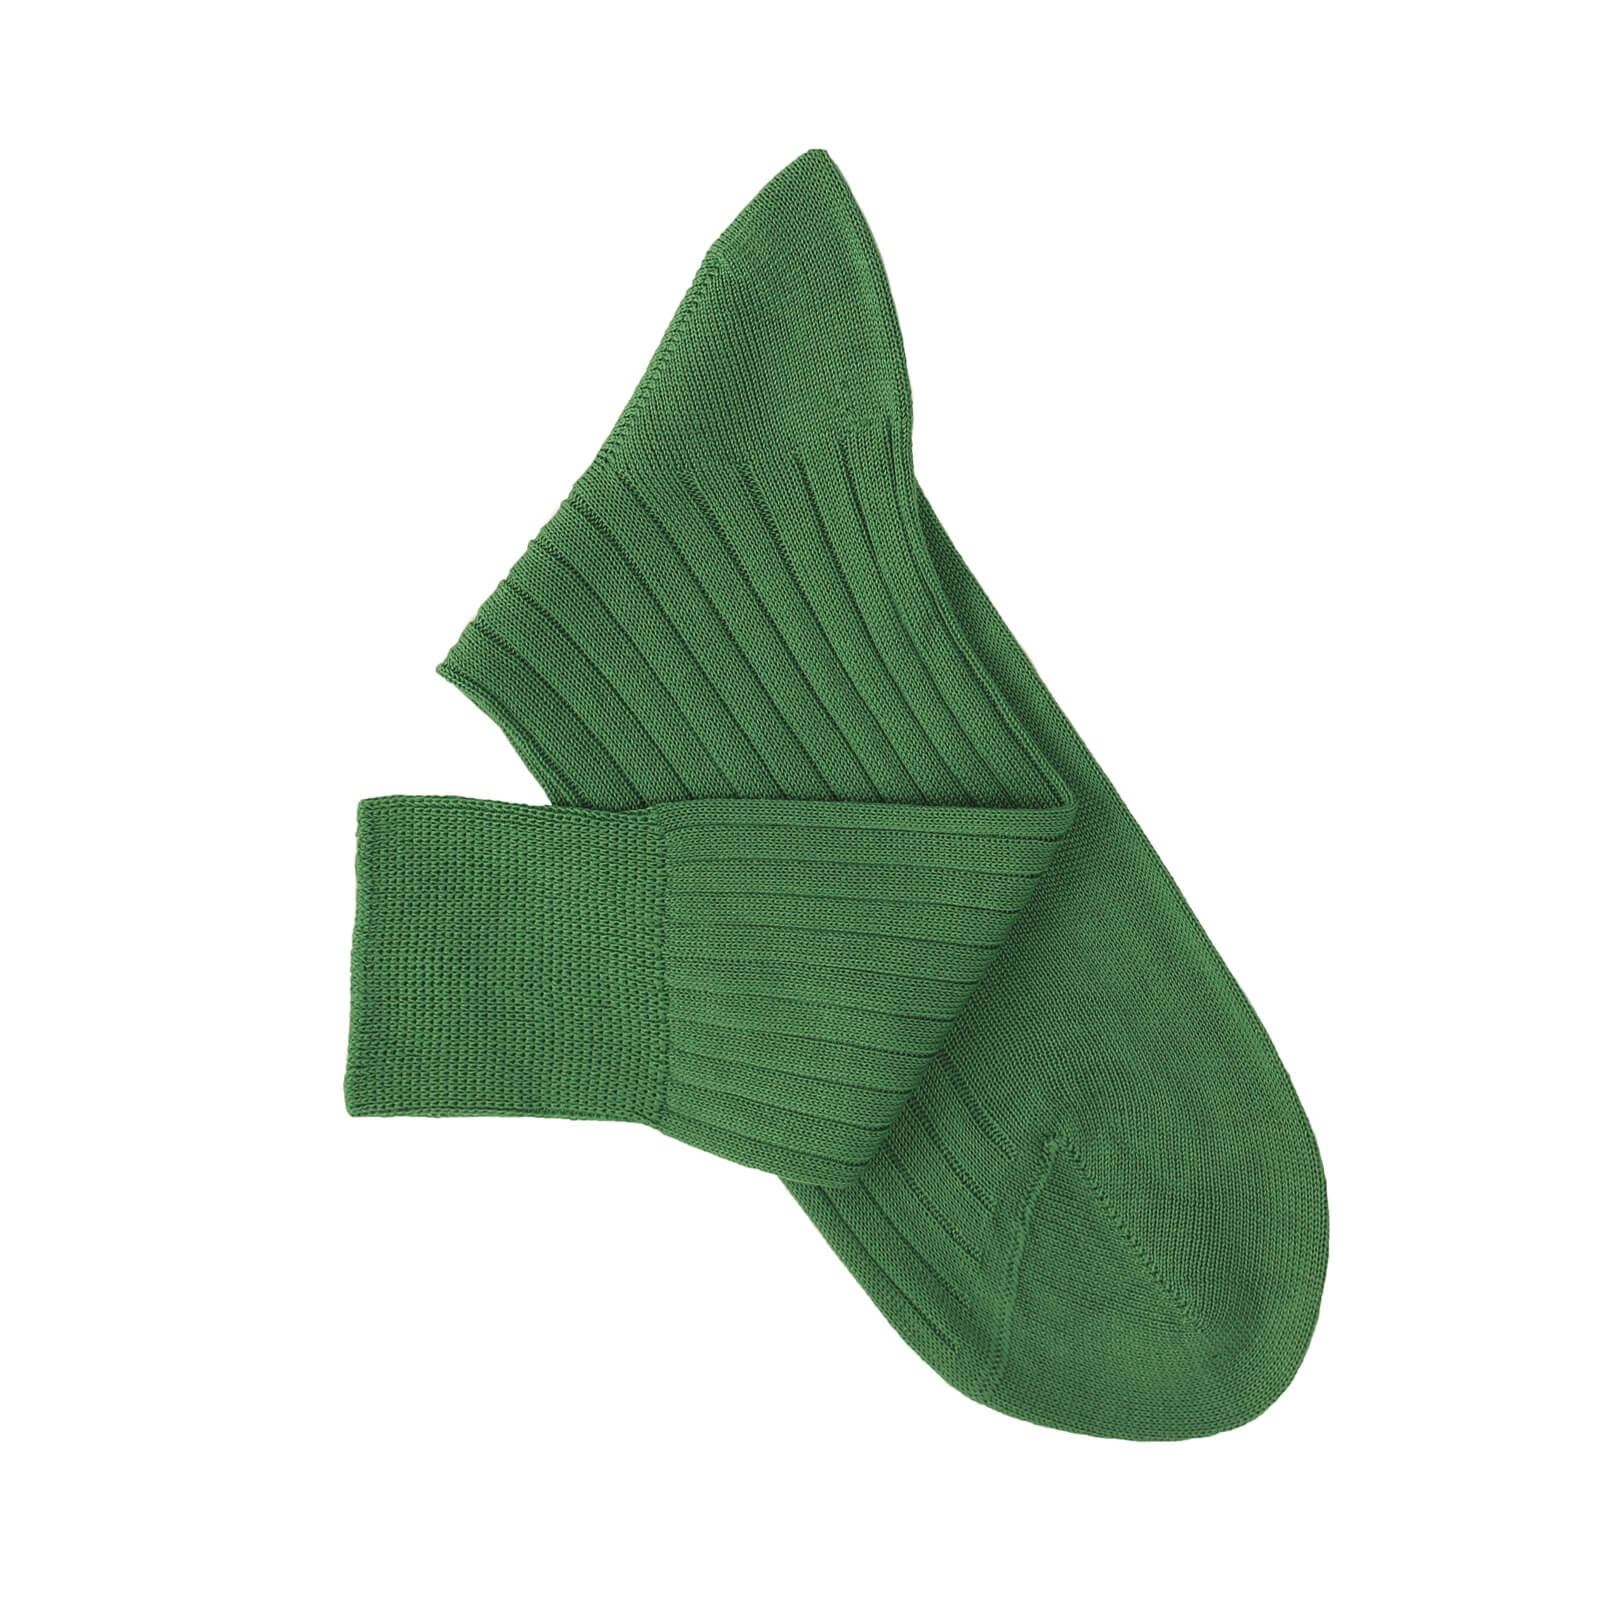 Monsieur Chaussure Basic Garden Green Lisle Socks For Men